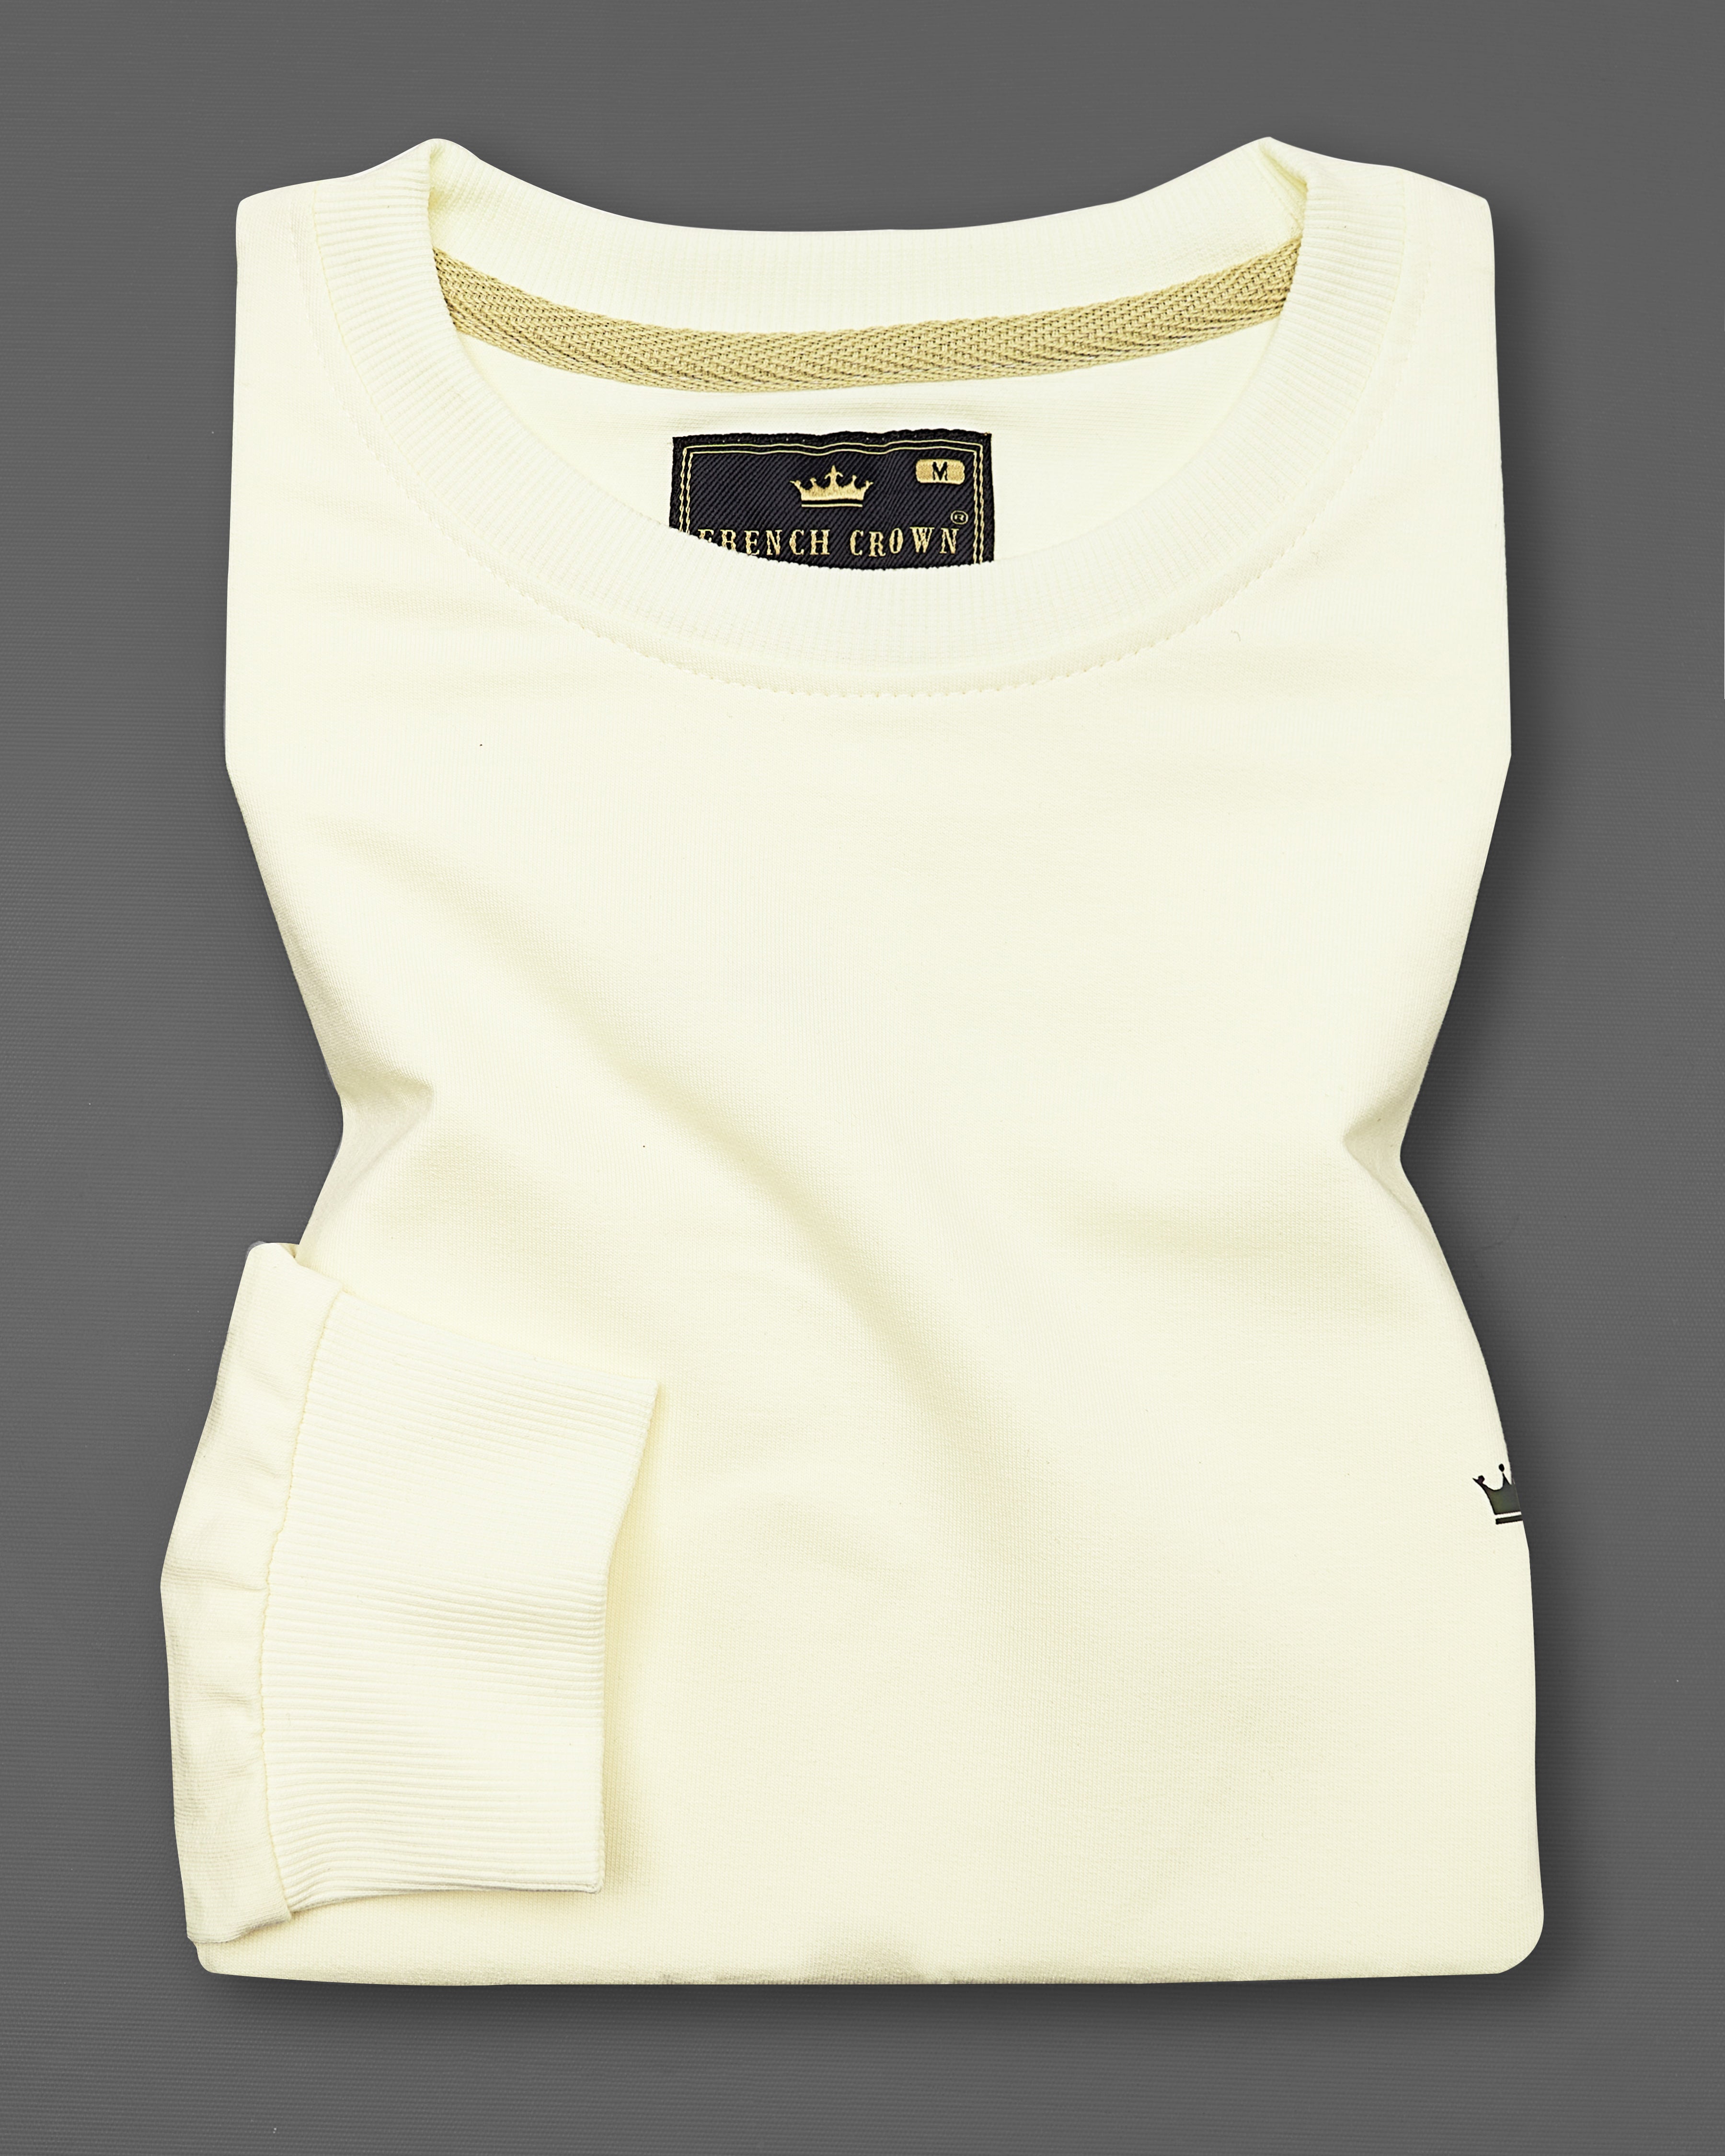 Eggshell Cream Block Pattern Full Sleeve Premium Cotton Heavyweight Sweatshirt TS675-S, TS675-M, TS675-L, TS675-XL, TS675-XXL